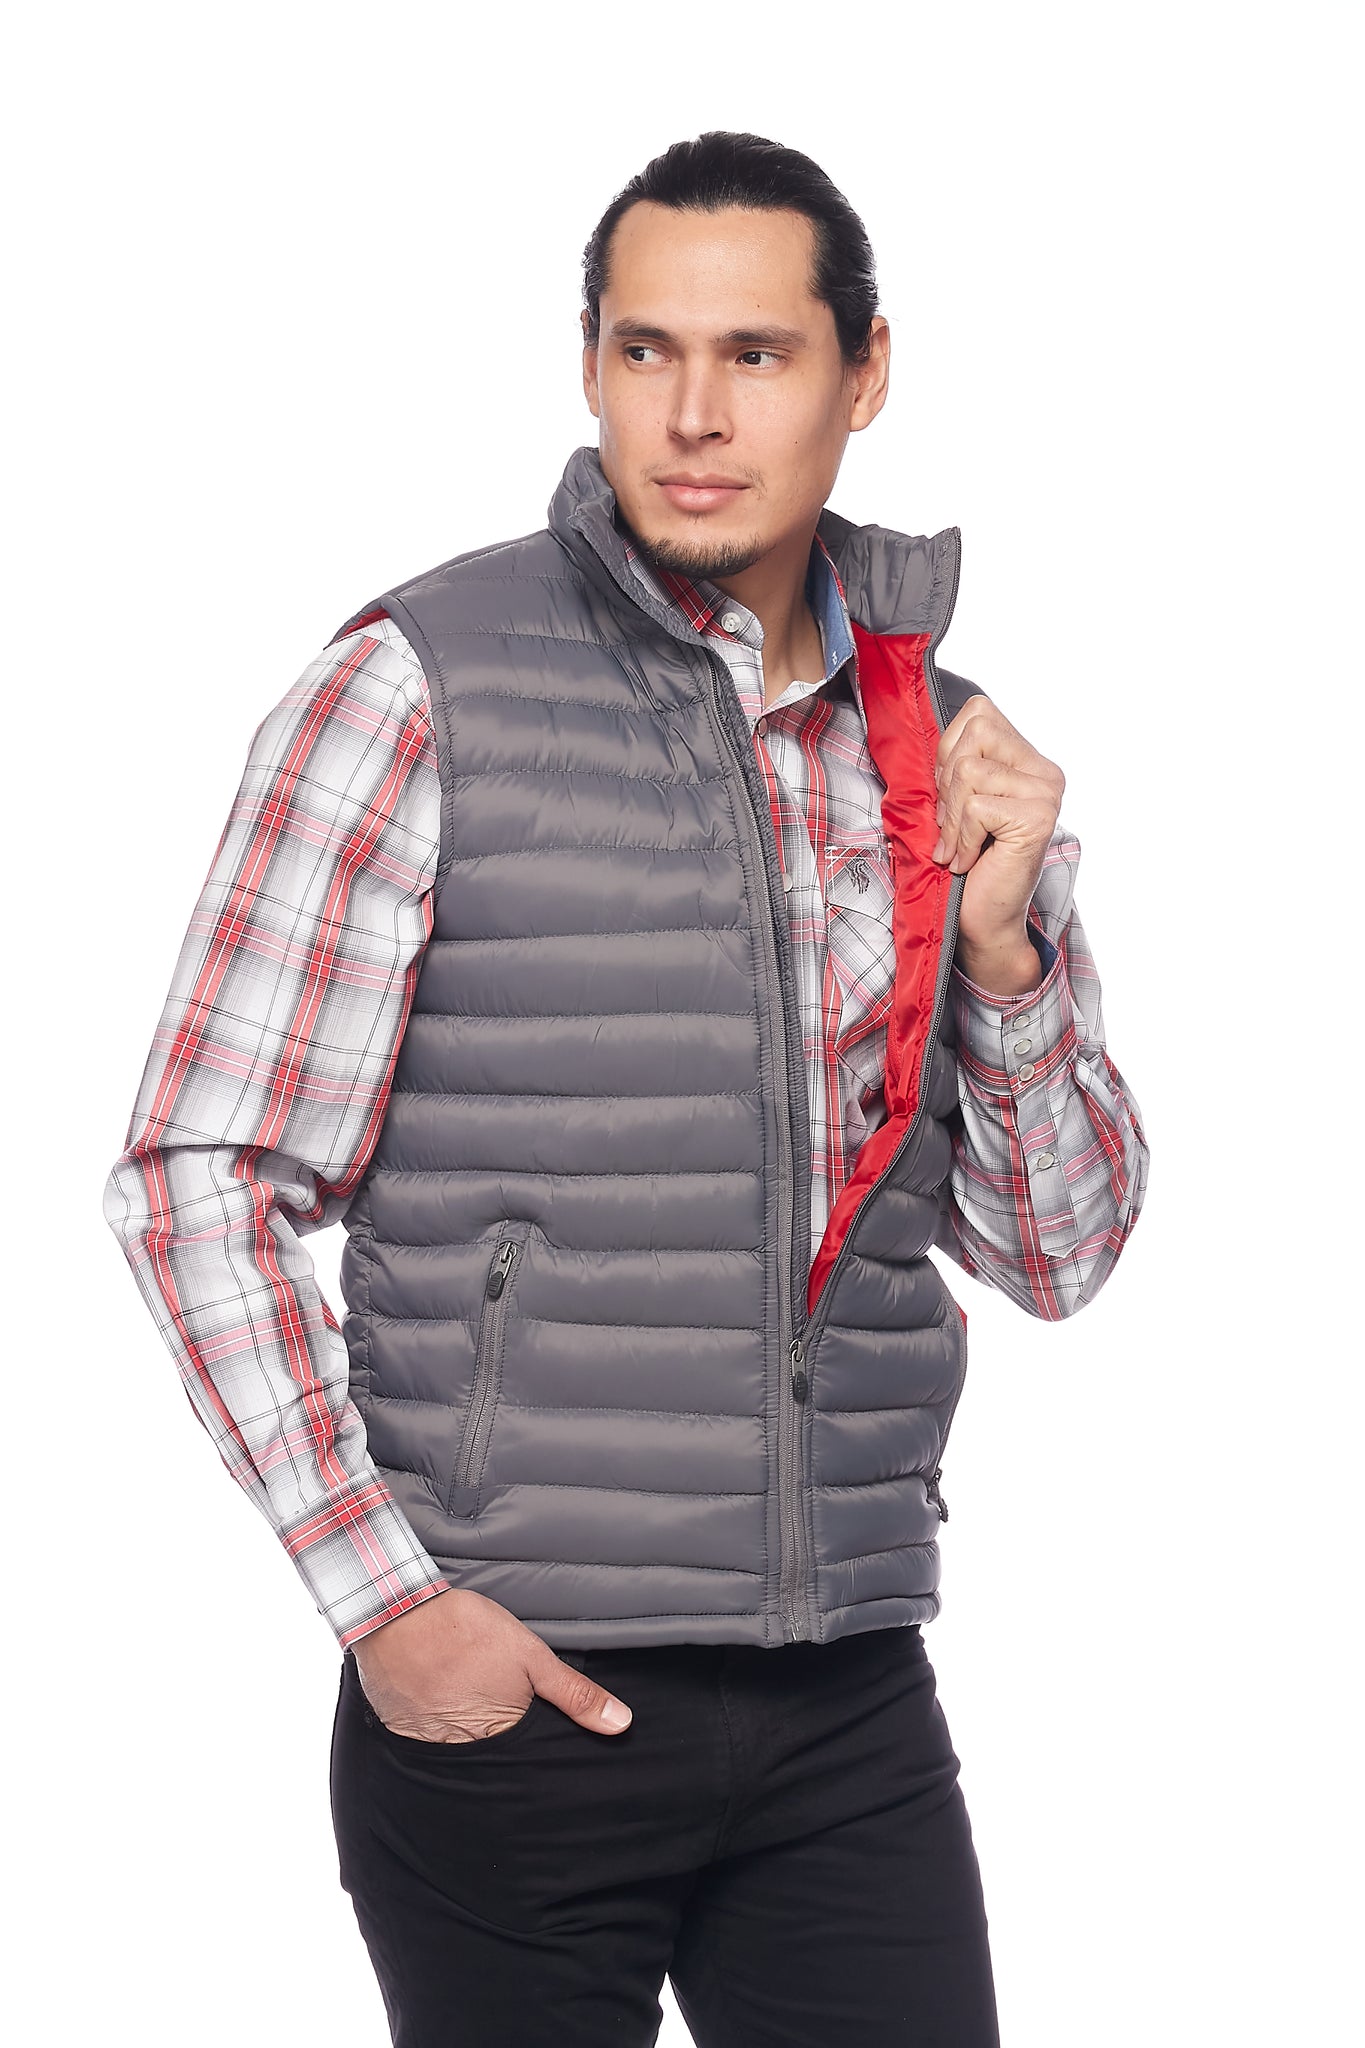 Men's Puffer Workwear/Streetwear Sleeveless Vest-NV640-DK GREY/RED